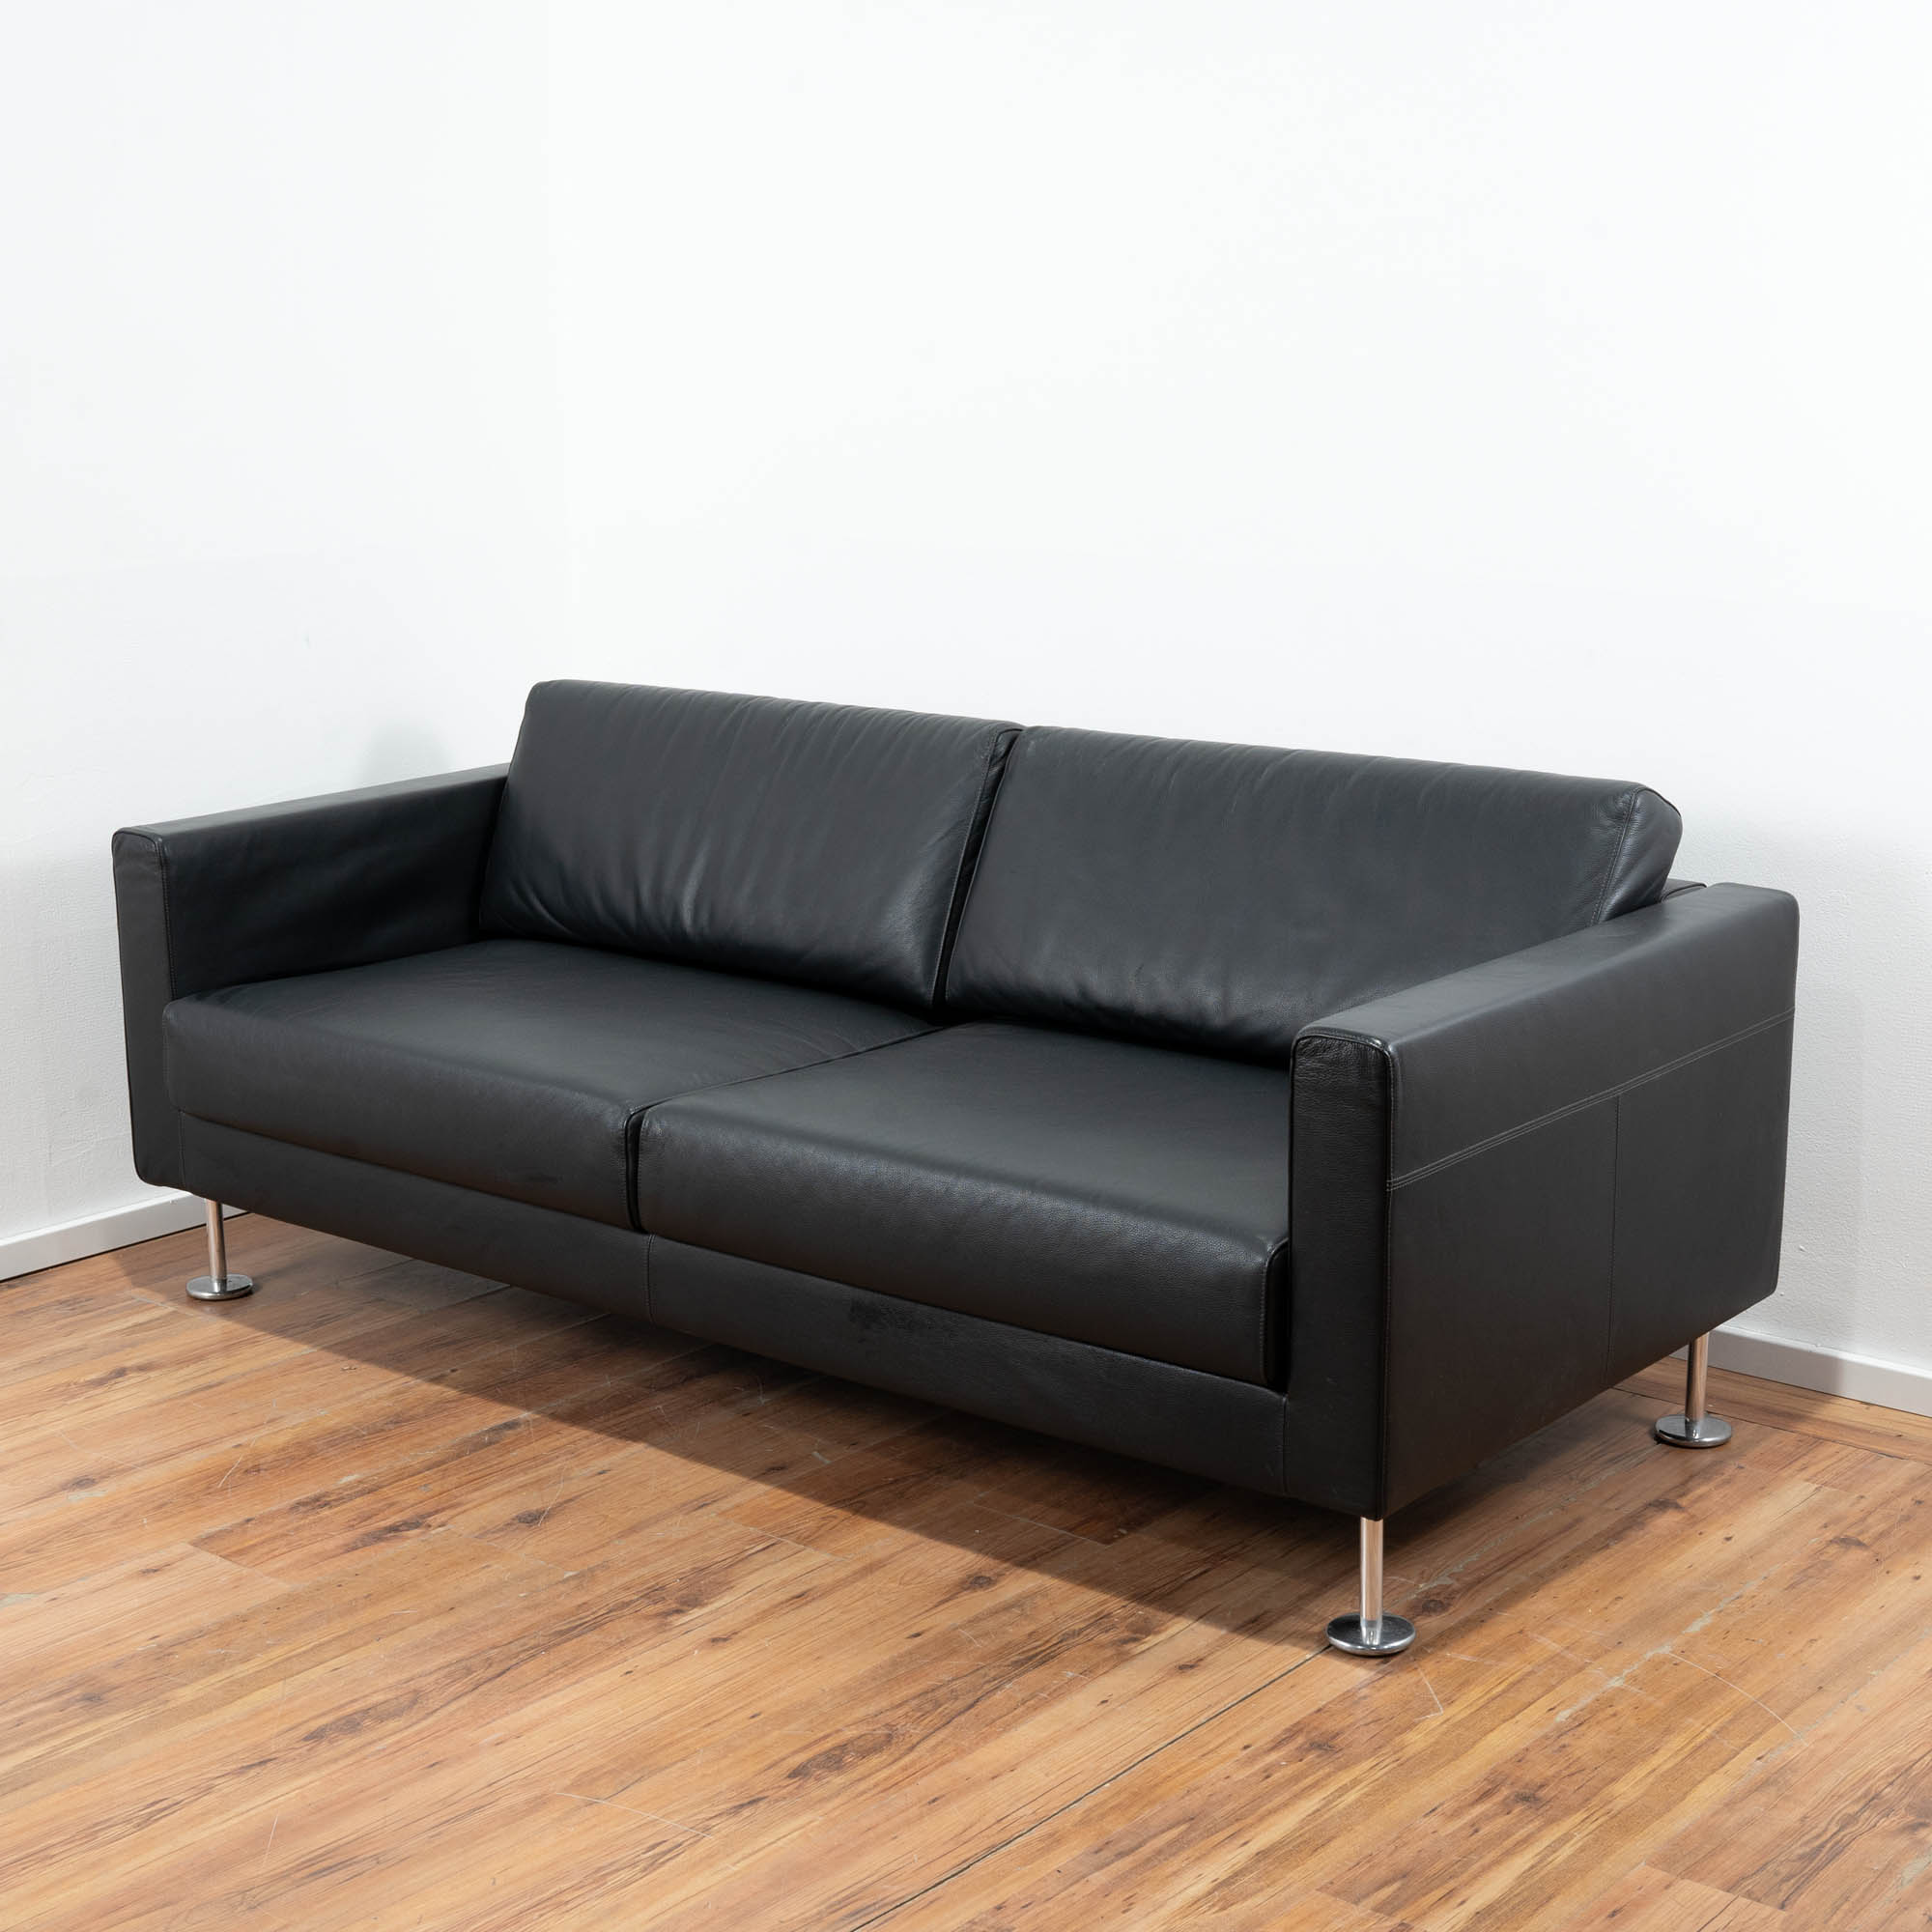 Vitra Park Sofa Leder schwarz 195 x 85 cm - 4-Fußgestell mit Tellerfüßen 